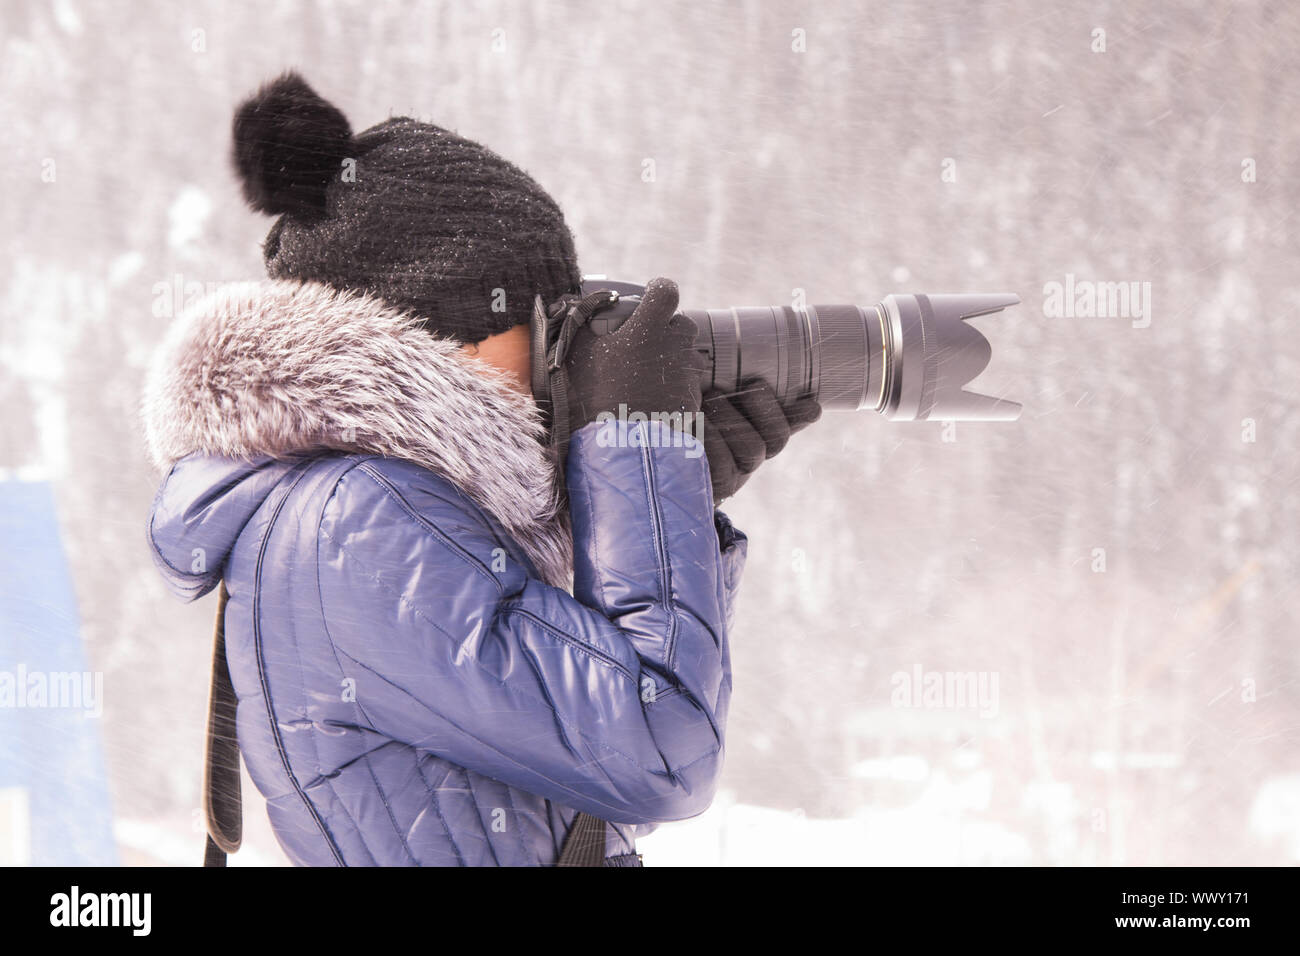 Junges Mädchen im Winter in einem Schneesturm auf eine SLR-Kamera mit Teleobjektiv fotografiert Stockfoto